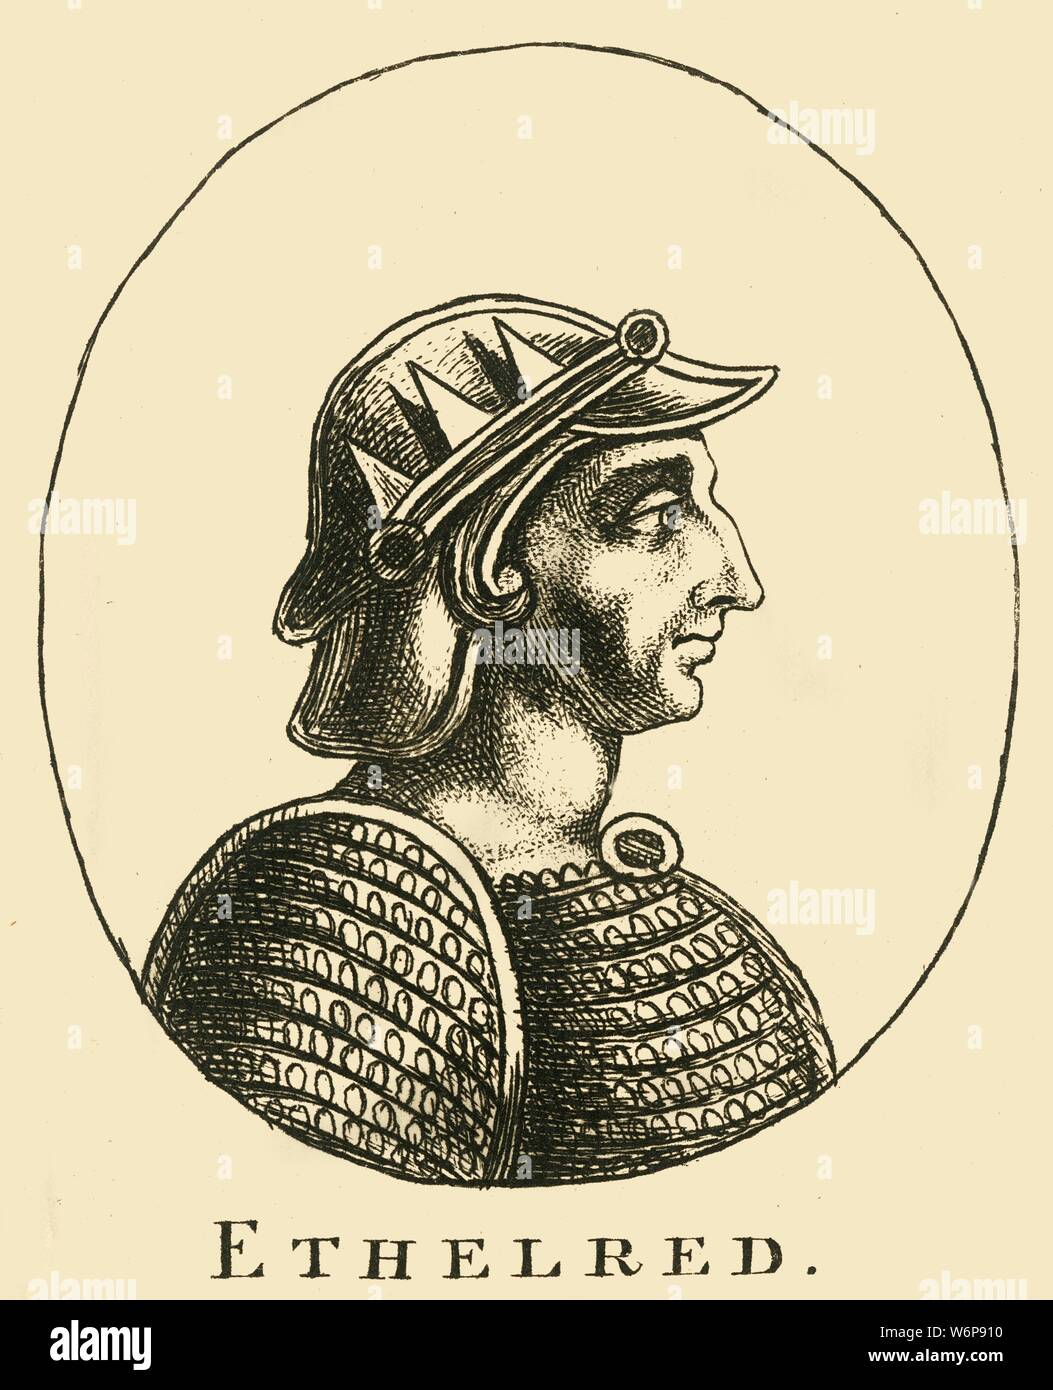 "Ethelred', del XVIII secolo. Ethelred II (l'(nella quasi totalità) impreparati) (c.966- 1016), noto come il (nella quasi totalità) impreparati, era il re dell'inglese da 978 a 1013 e di nuovo dal 1014 fino alla sua morte. Foto Stock